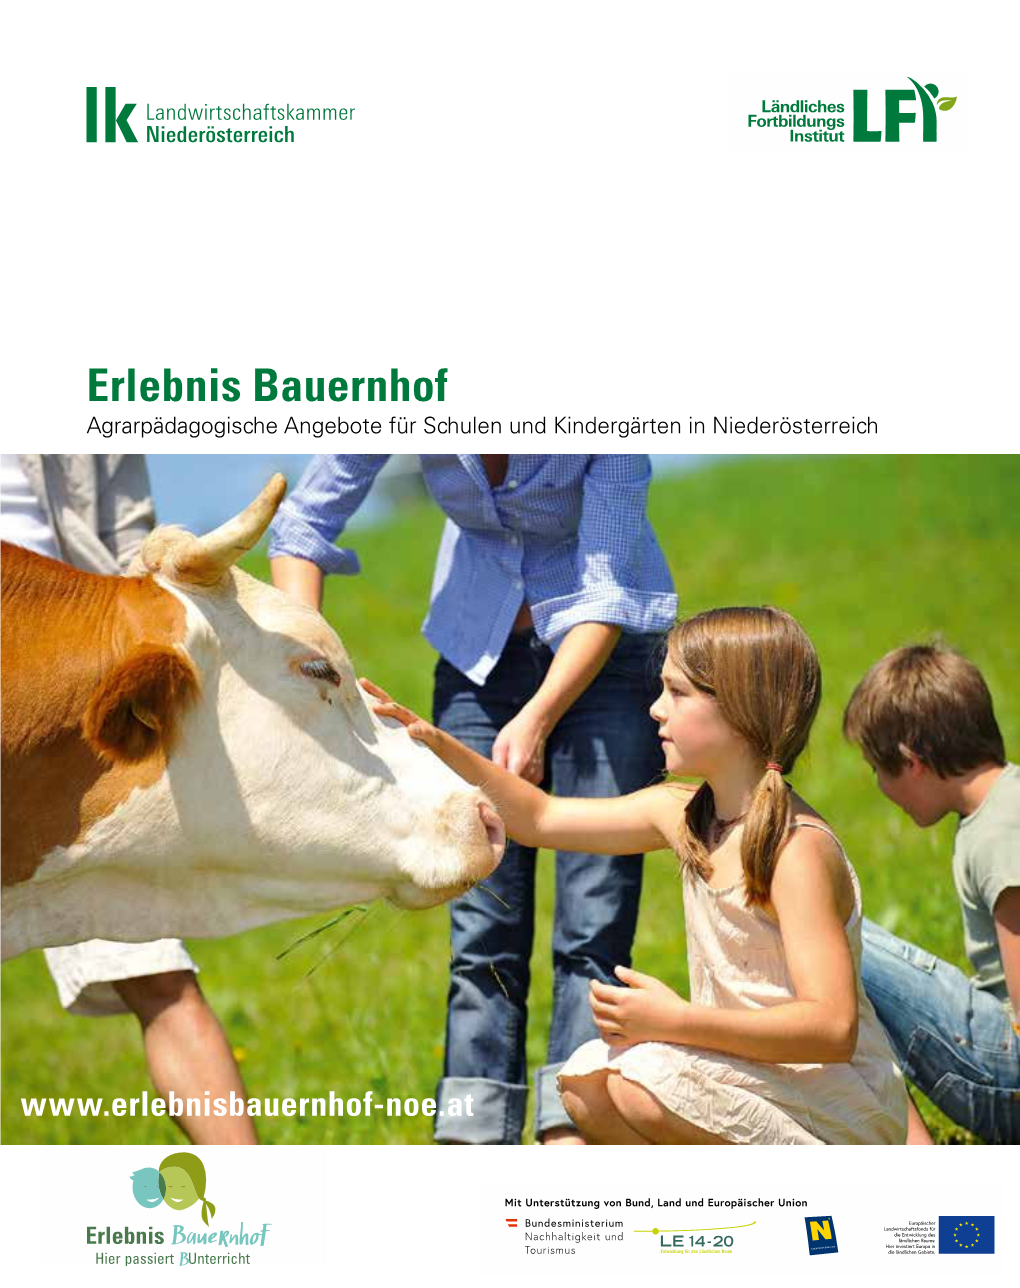 Erlebnis Bauernhof Agrarpädagogische Angebote Für Schulen Und Kindergärten in Niederösterreich